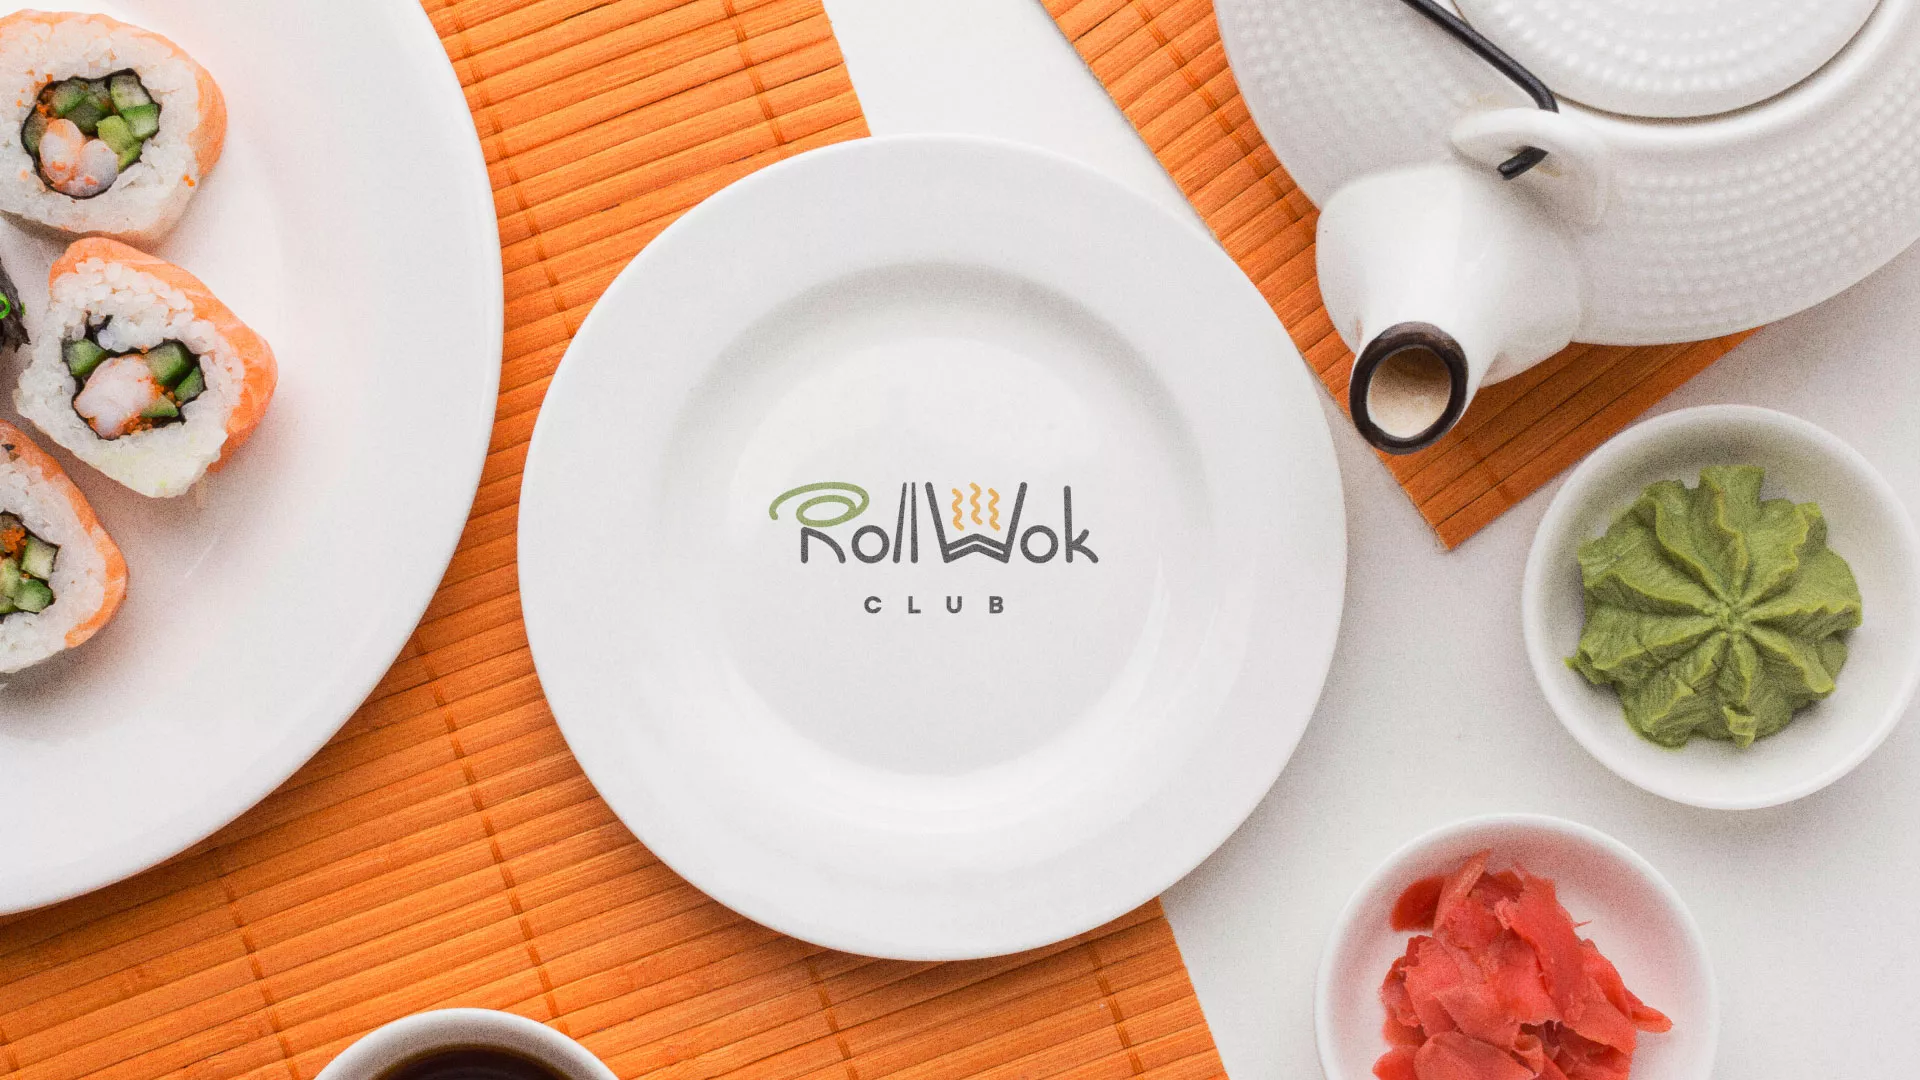 Разработка логотипа и фирменного стиля суши-бара «Roll Wok Club» в Набережных Челнах